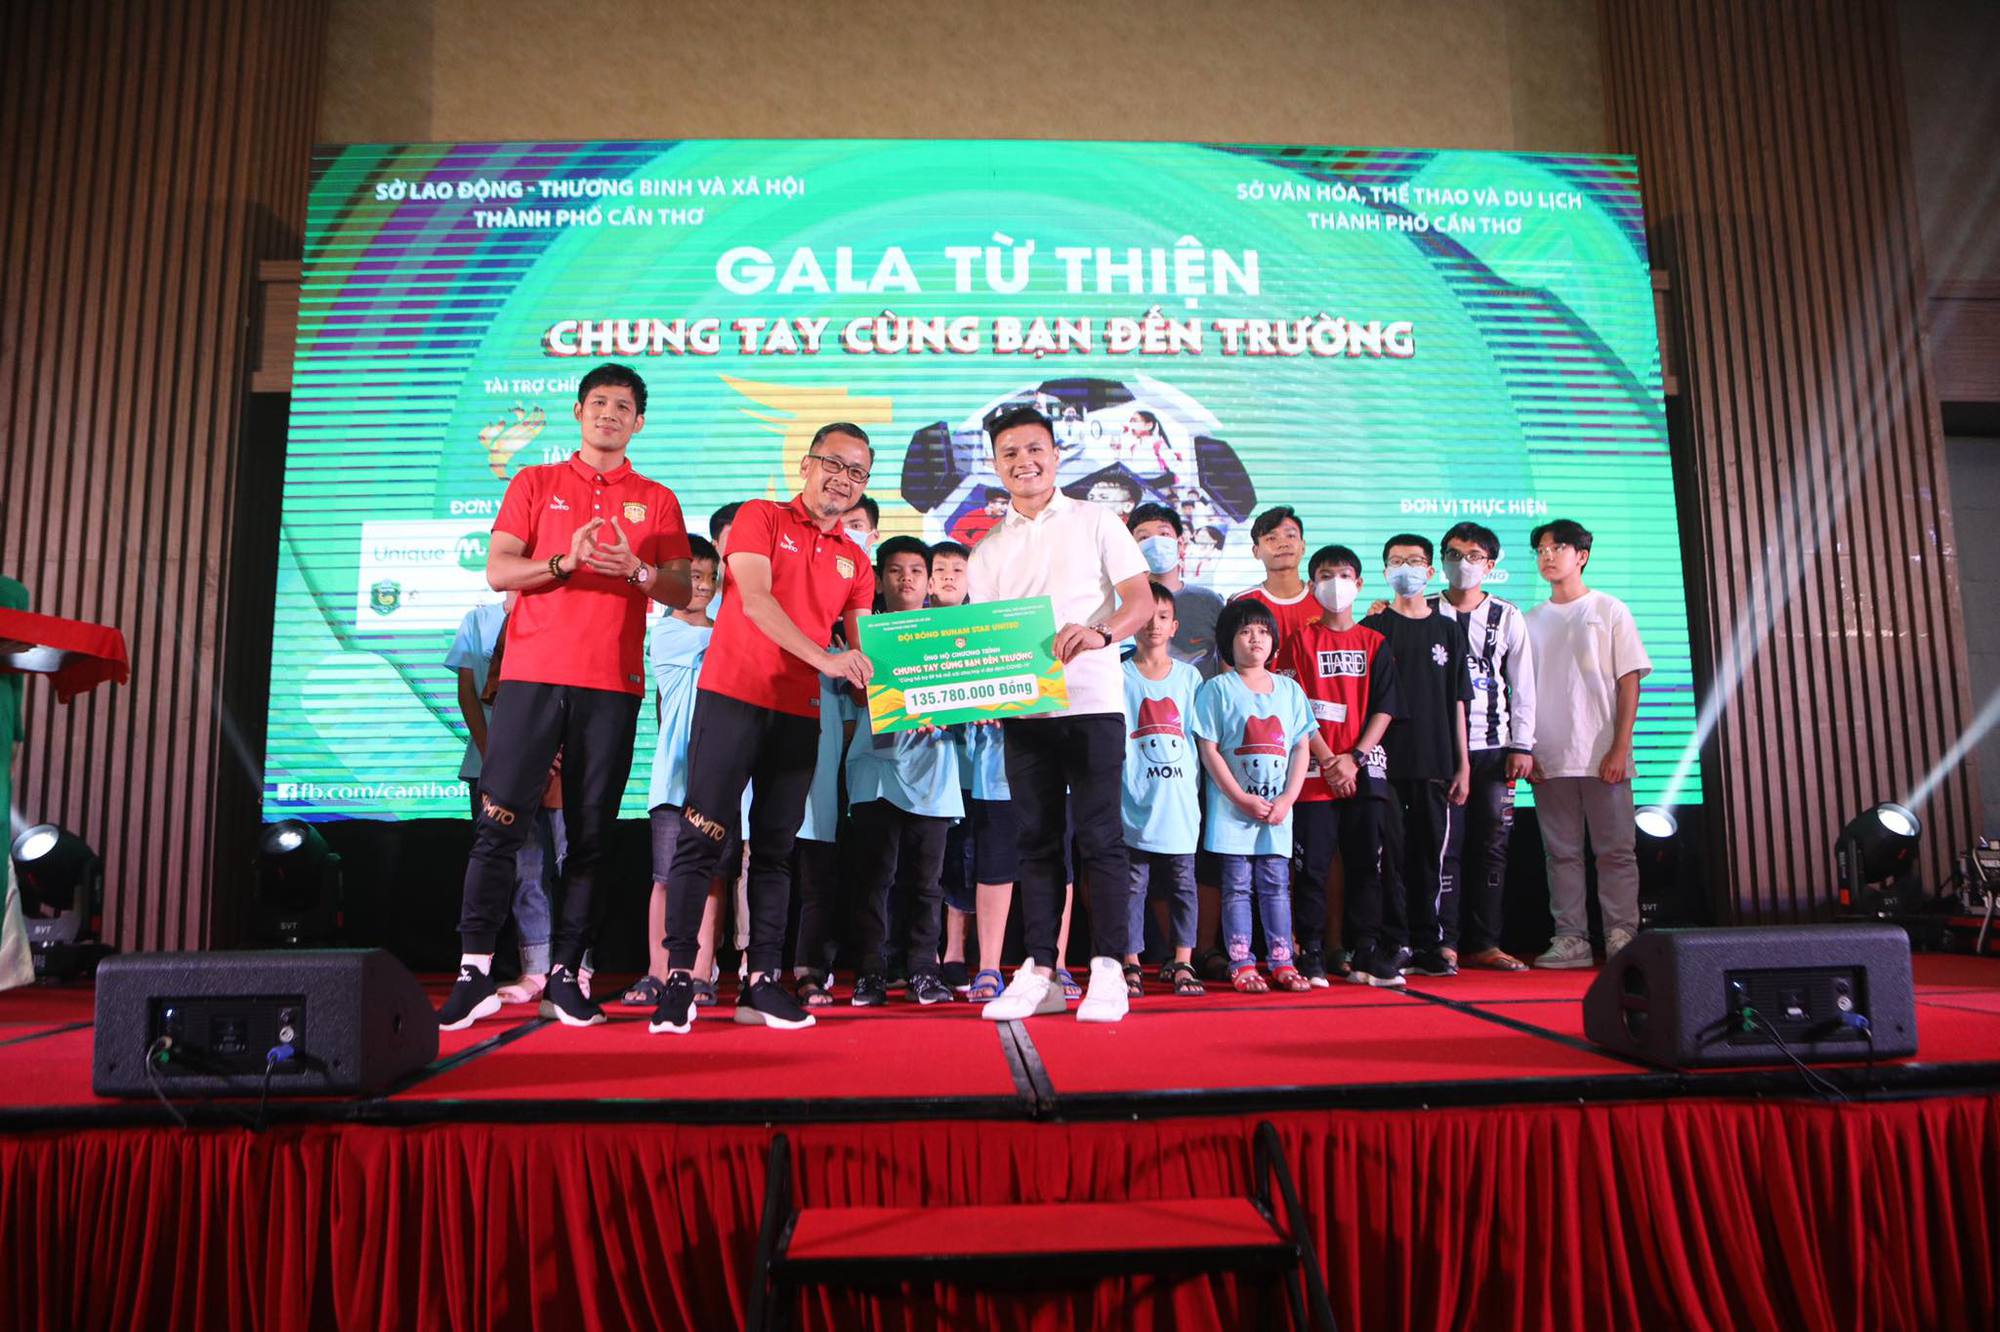 Náo động sân Cần Thơ, Quang Hải - Hoài Linh quyên góp gần 1 tỉ đồng giúp trẻ em mồ côi vì Covid-19 - Ảnh 9.